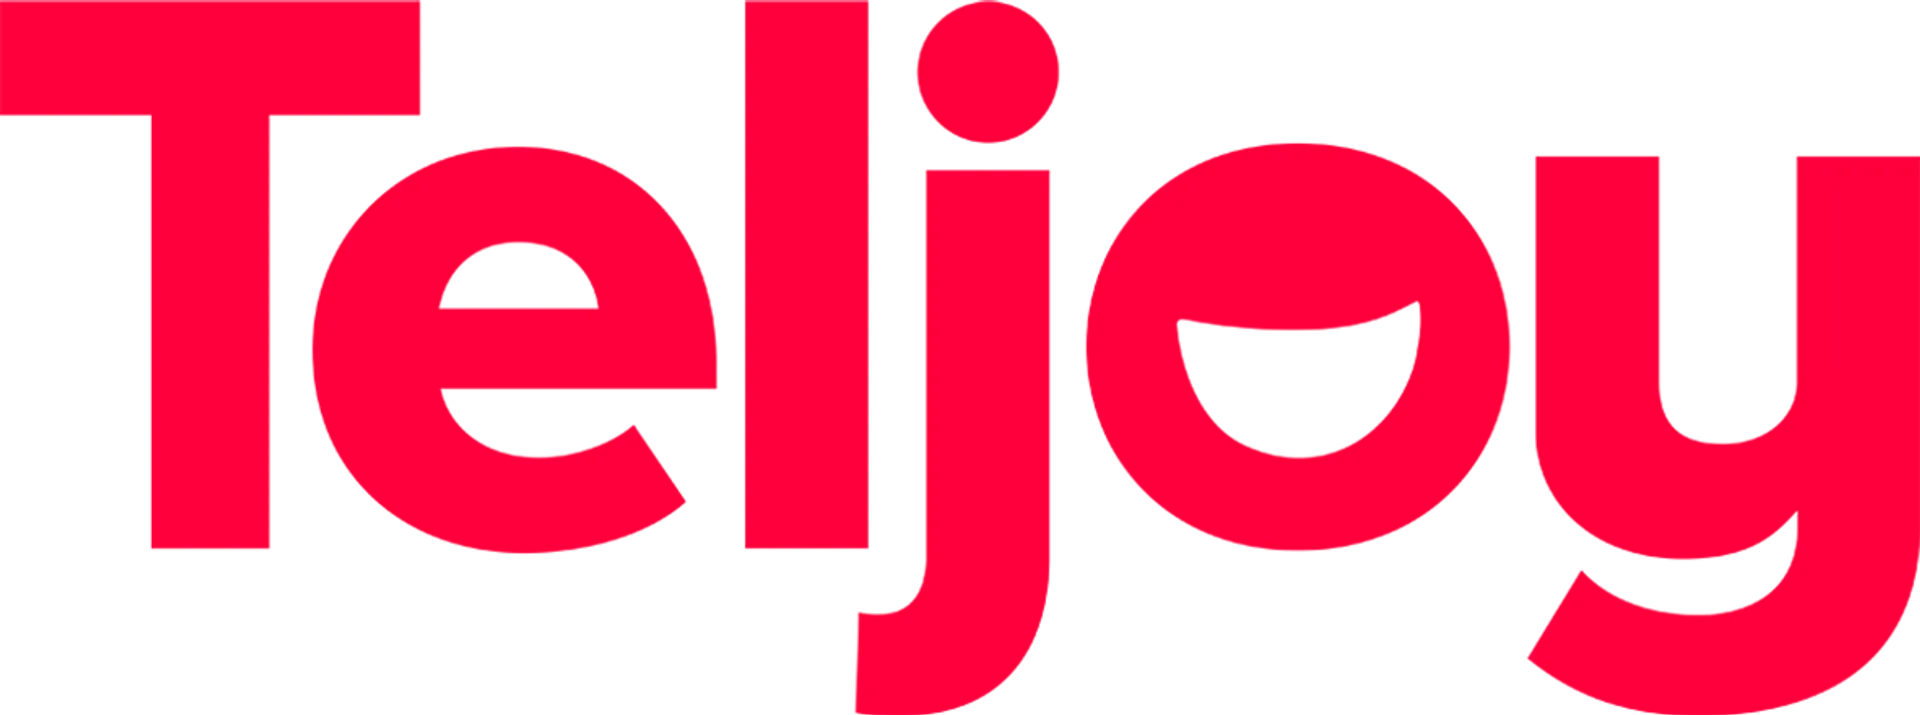 TELJOY logo